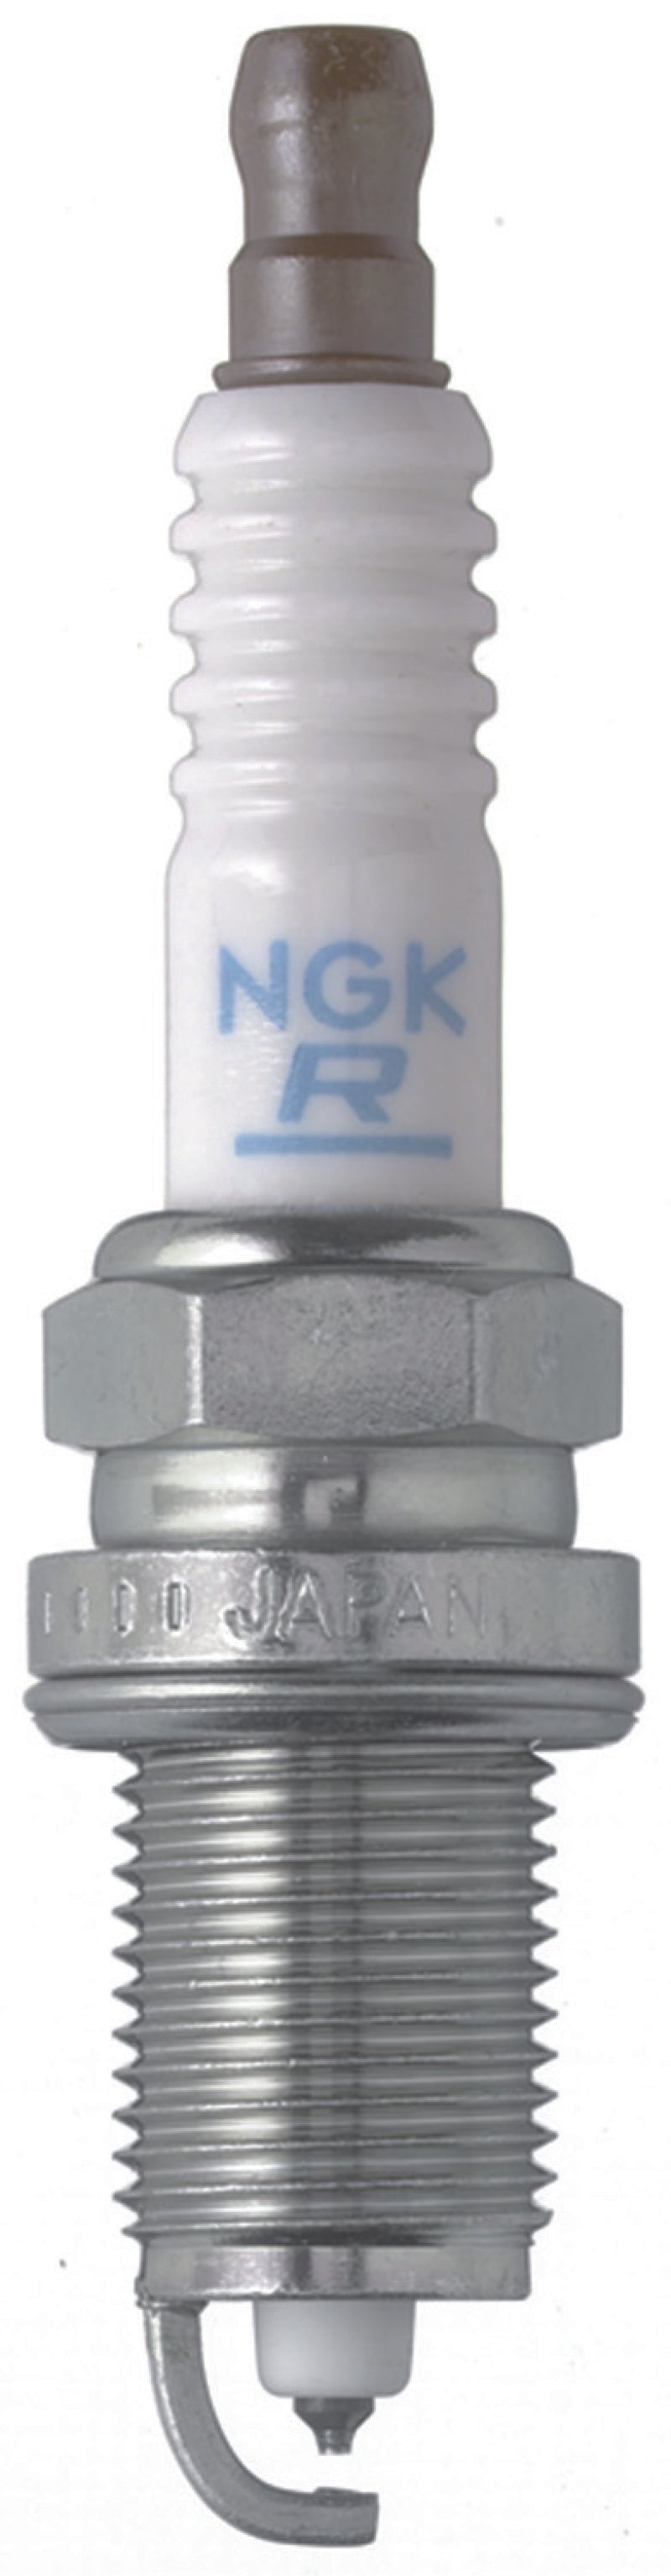 NGK Laser Platinum Spark Plug Box of 4 (ZFR5LP-13G)